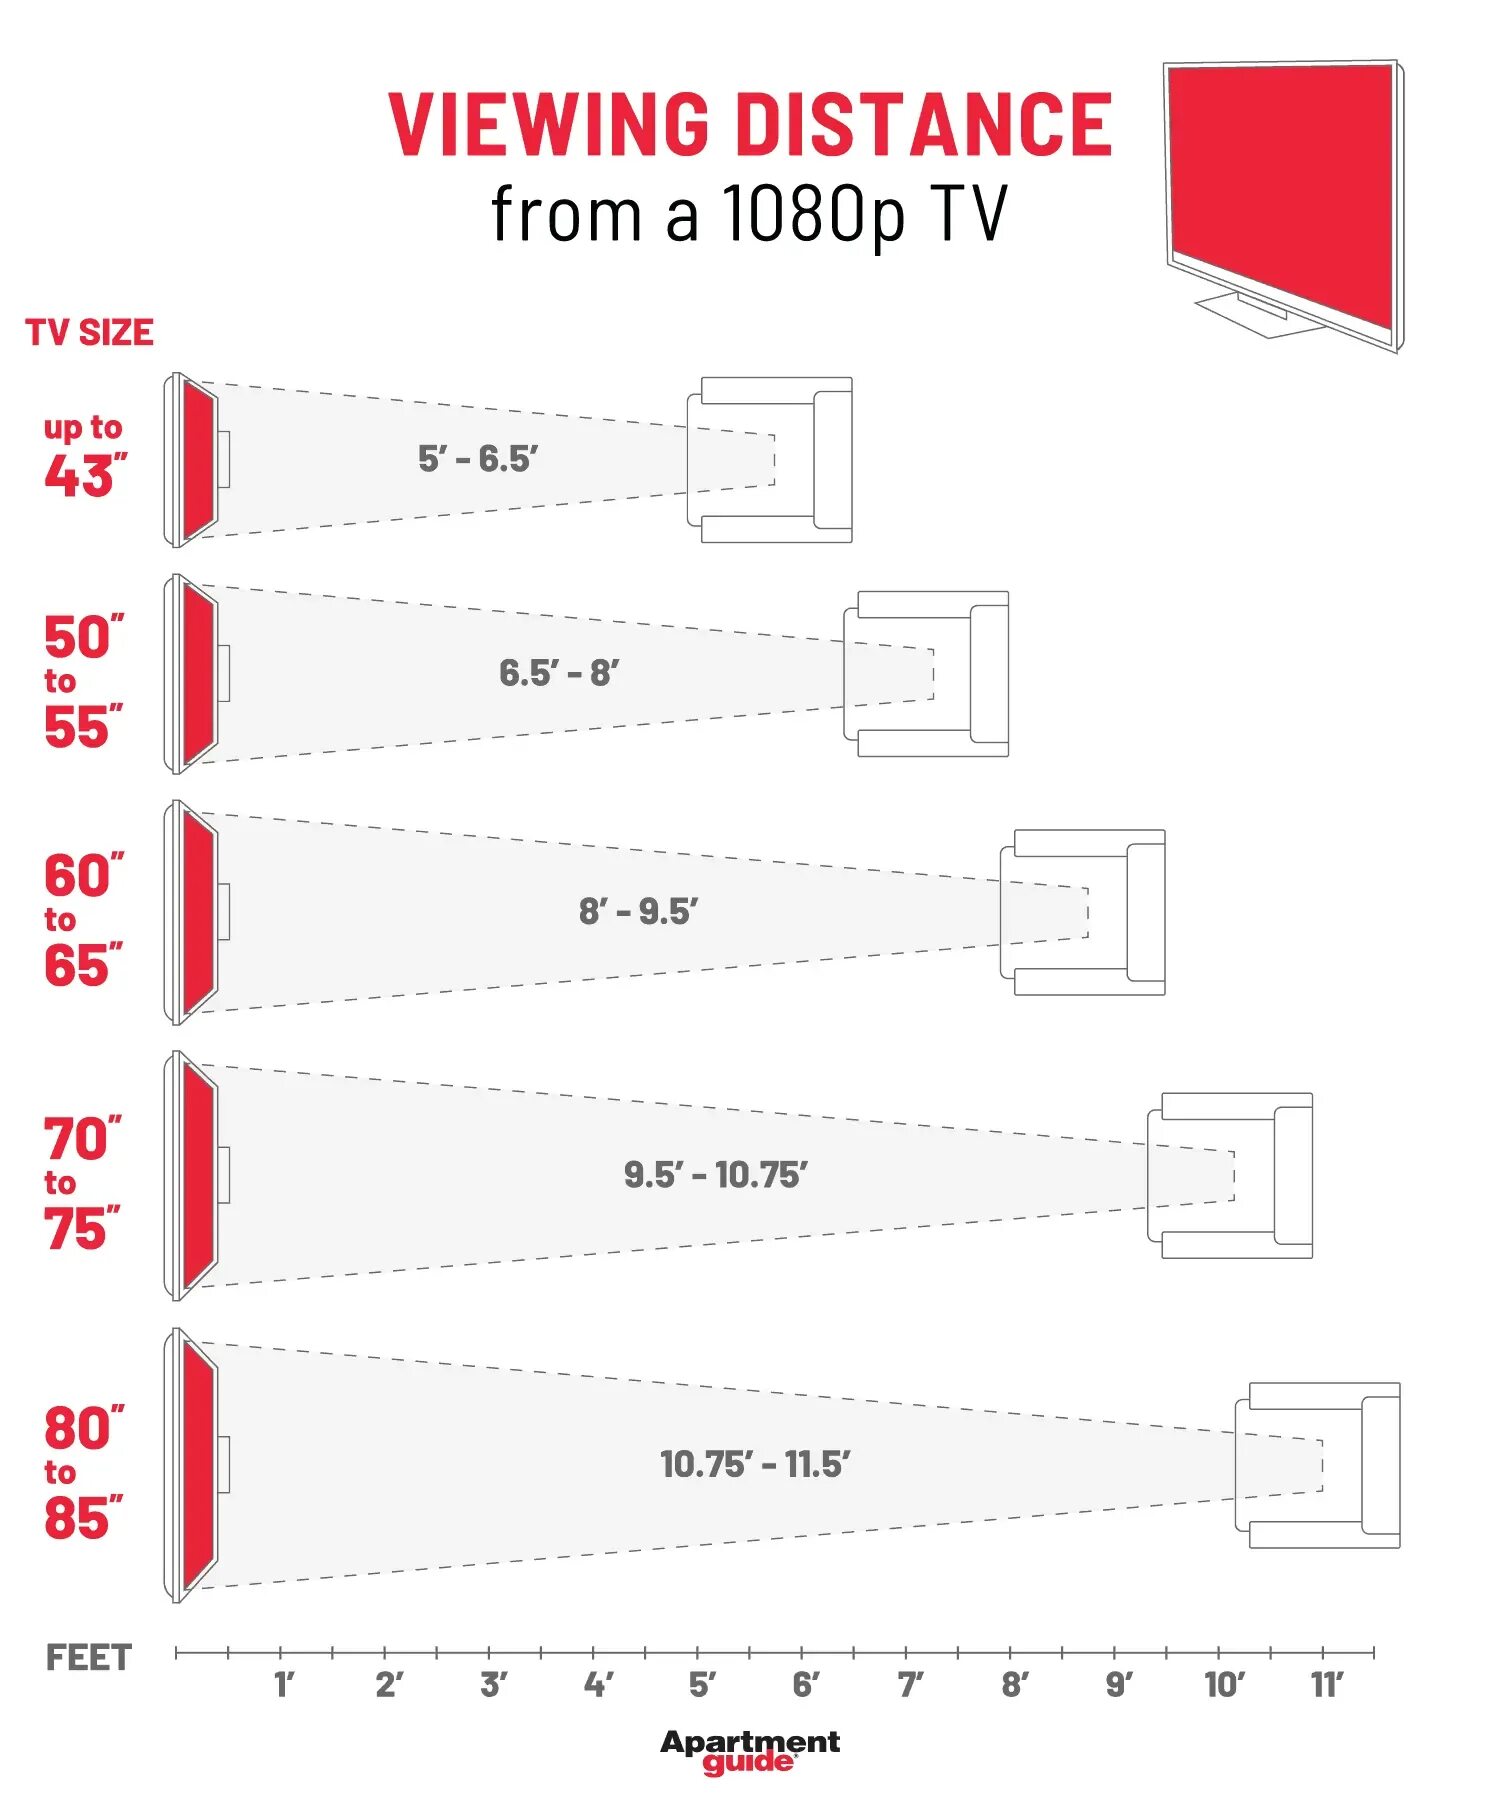 Расстояние до телевизора. Размер ТВ от расстояния до дивана. Расстояние от ТВ до дивана. Размер телевизора по расстоянию.